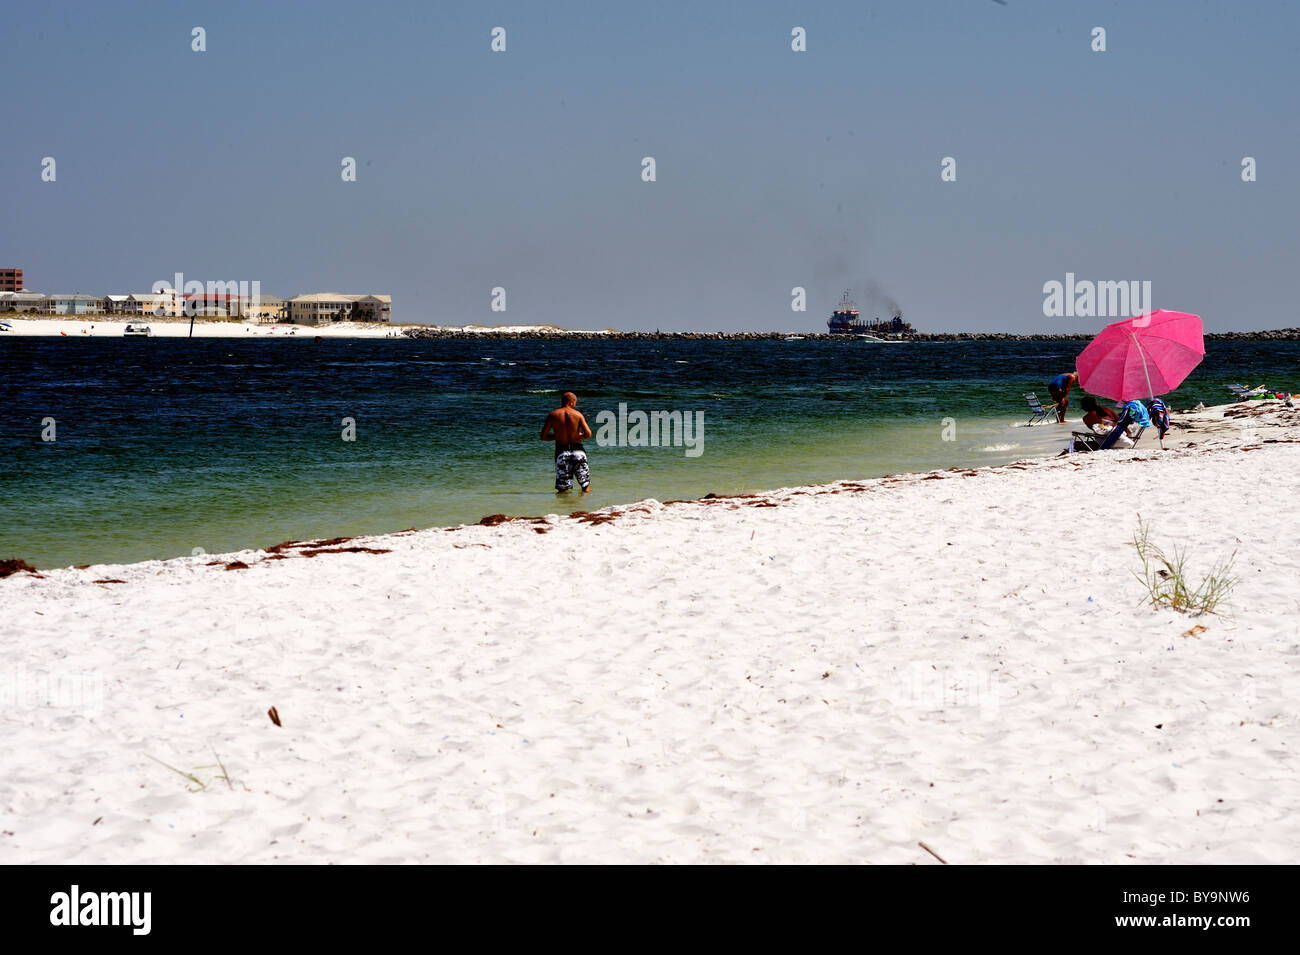 Le long de la plage, près de col est Destin, Floride avec les personnes fréquentant les plages et ombrelle Banque D'Images